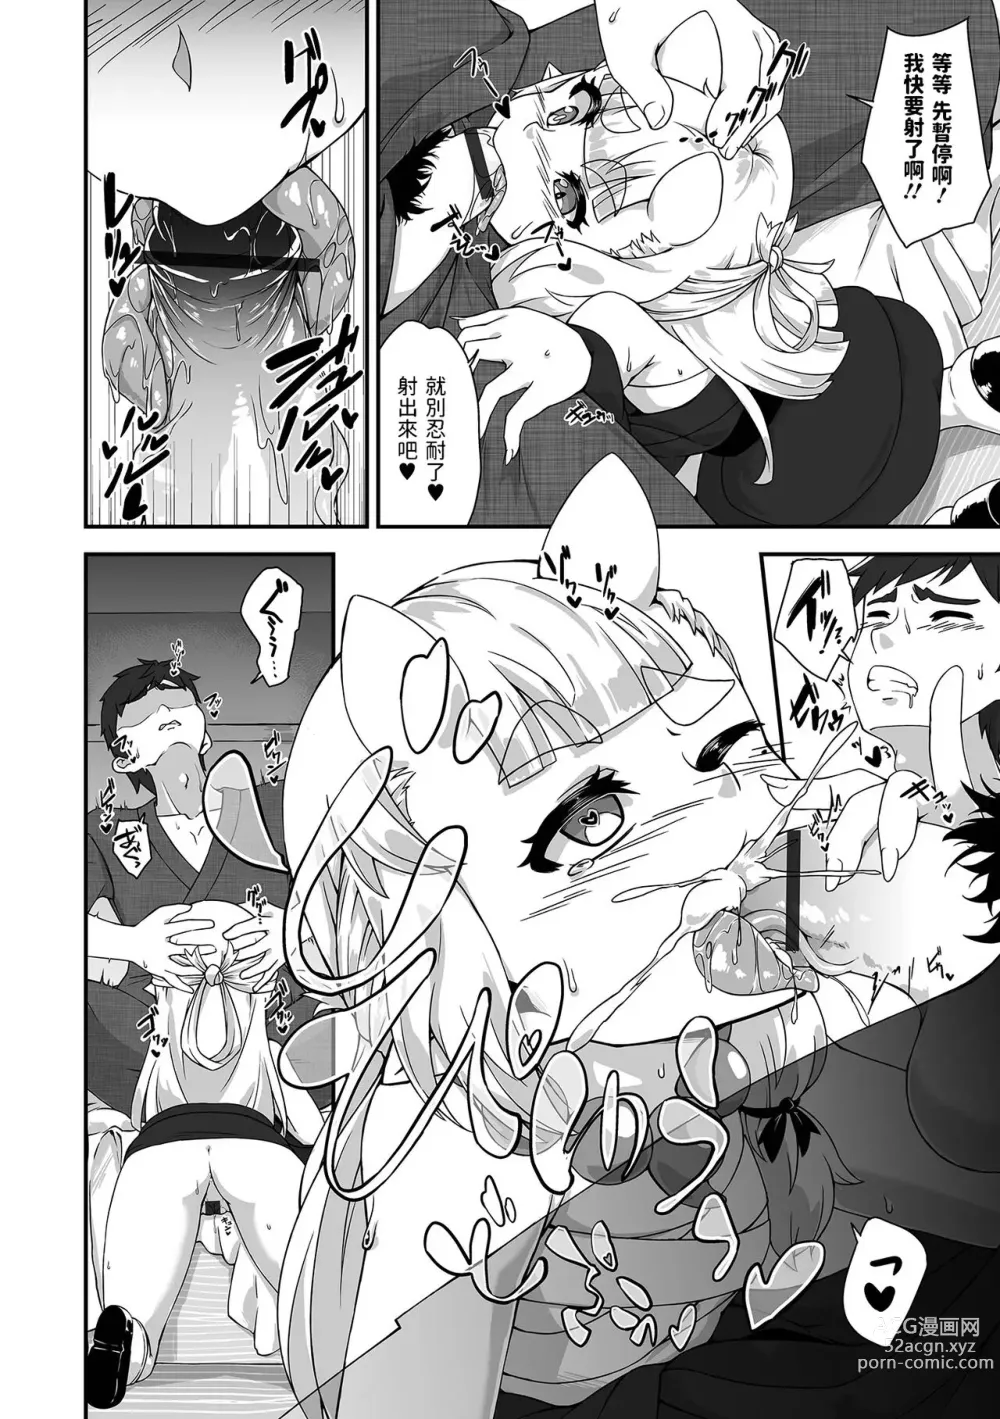 Page 6 of manga Sake no Sakana wa Oni to Tomoni